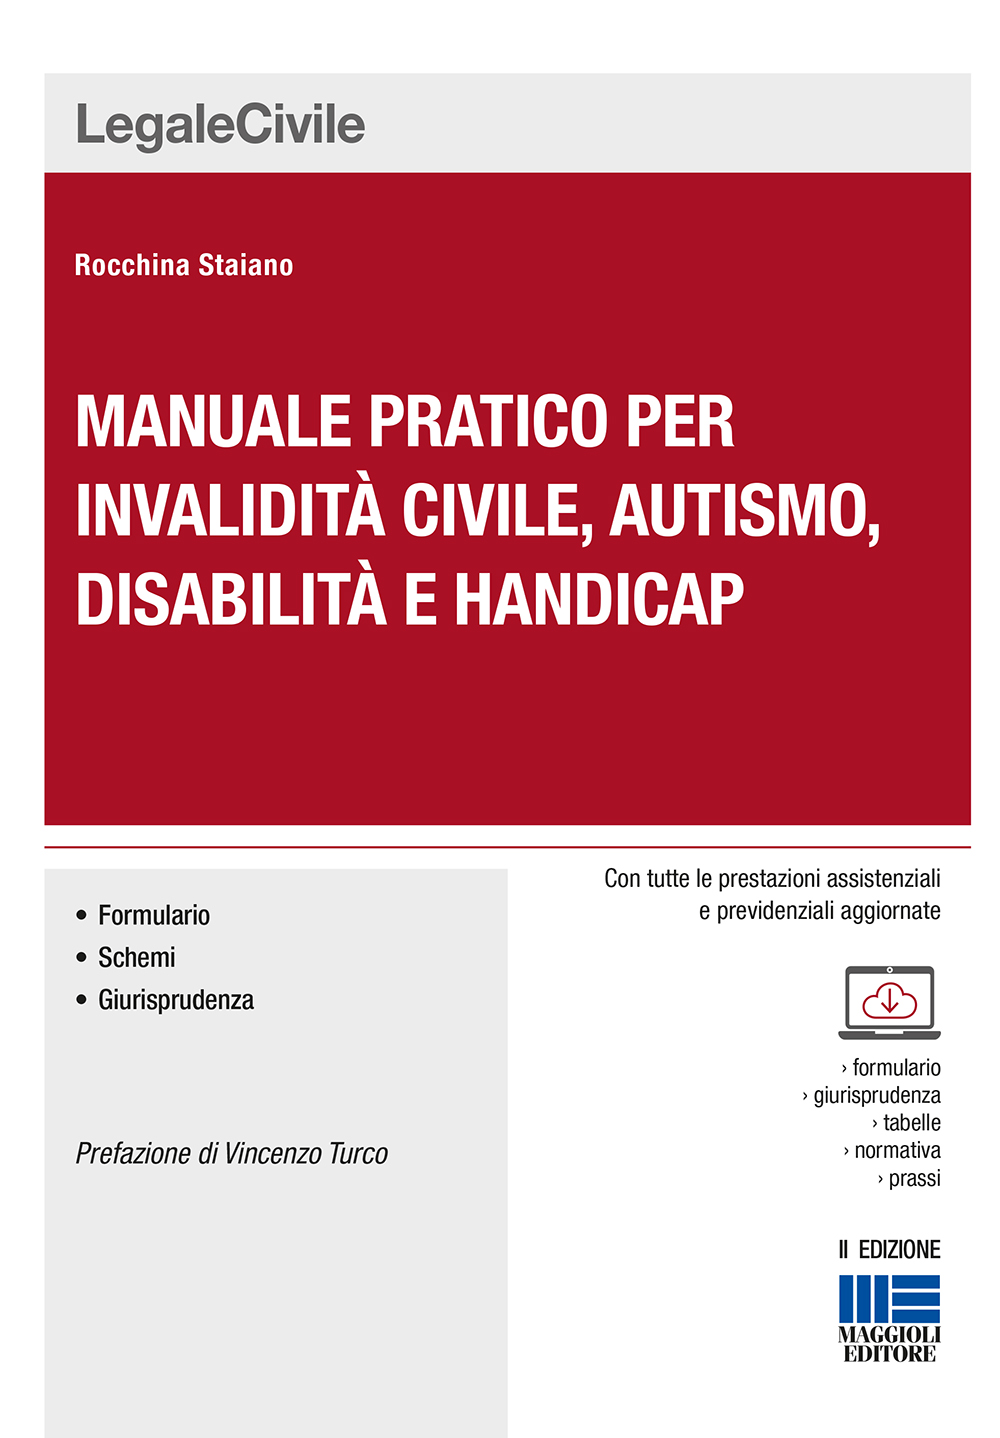 Manuale pratico per invalidità civile, autismo, disabilità e handicap